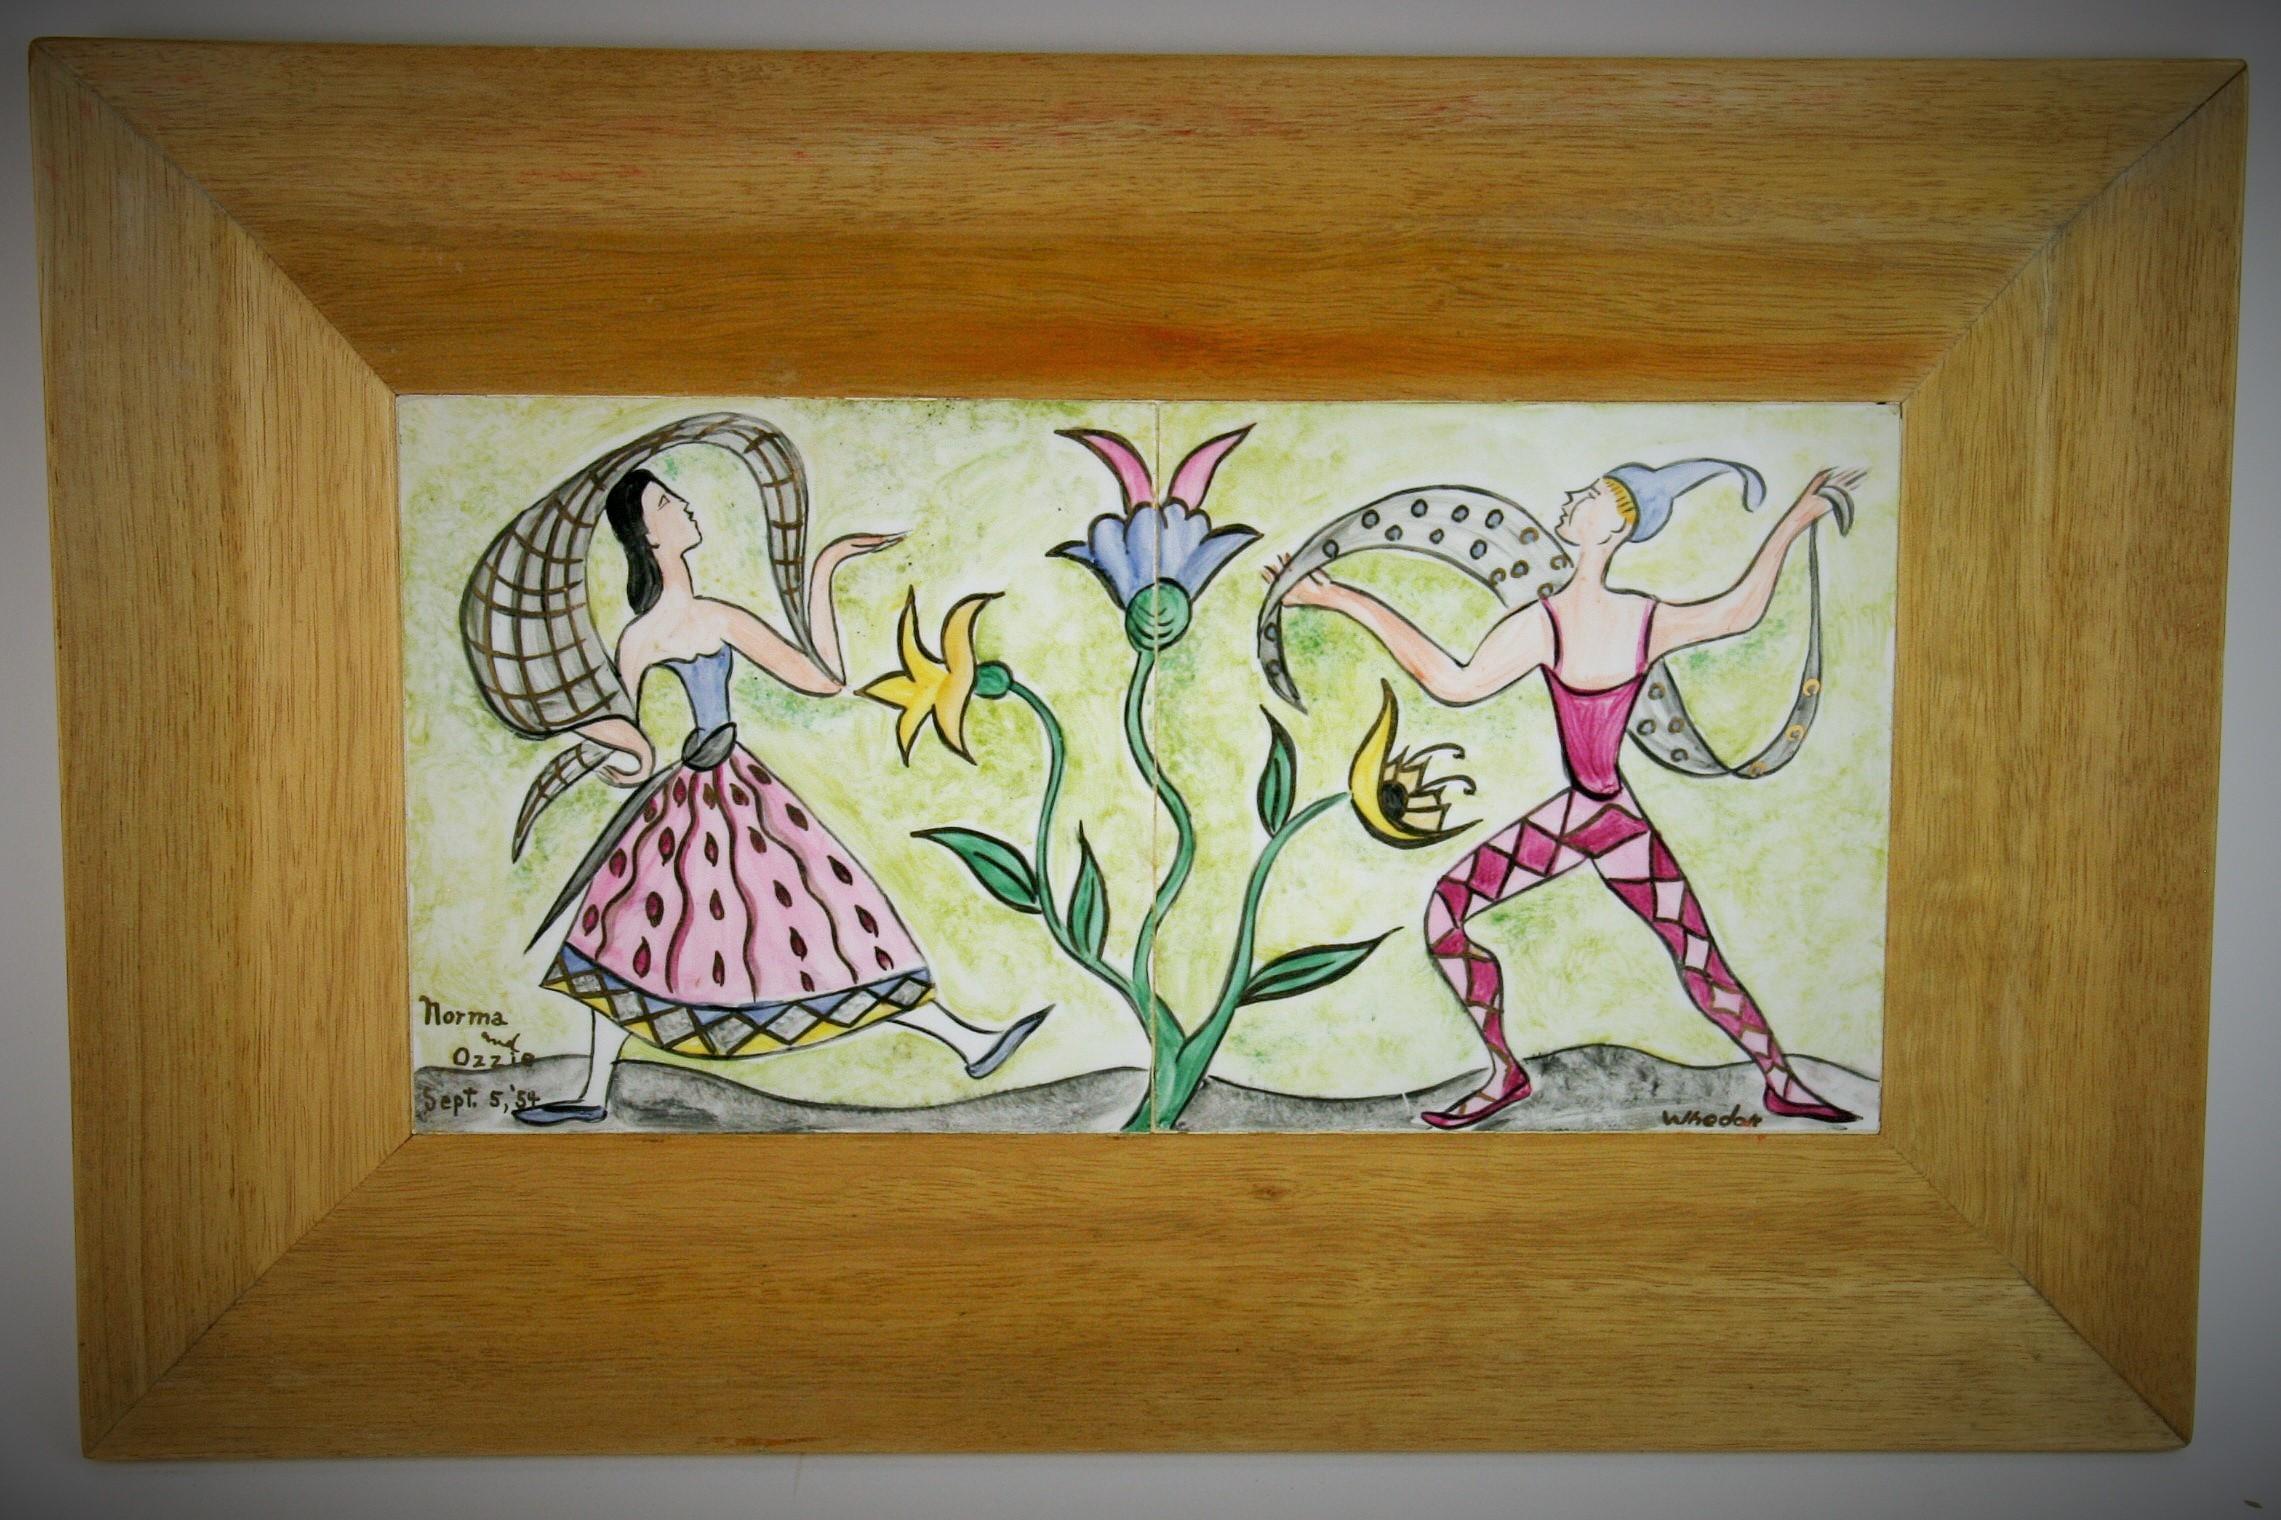 3-400 zwei handbemalte Folk Art Keramikplatten in einem natürlichen Holzrahmen.
Bildgröße: 12,5 x 6